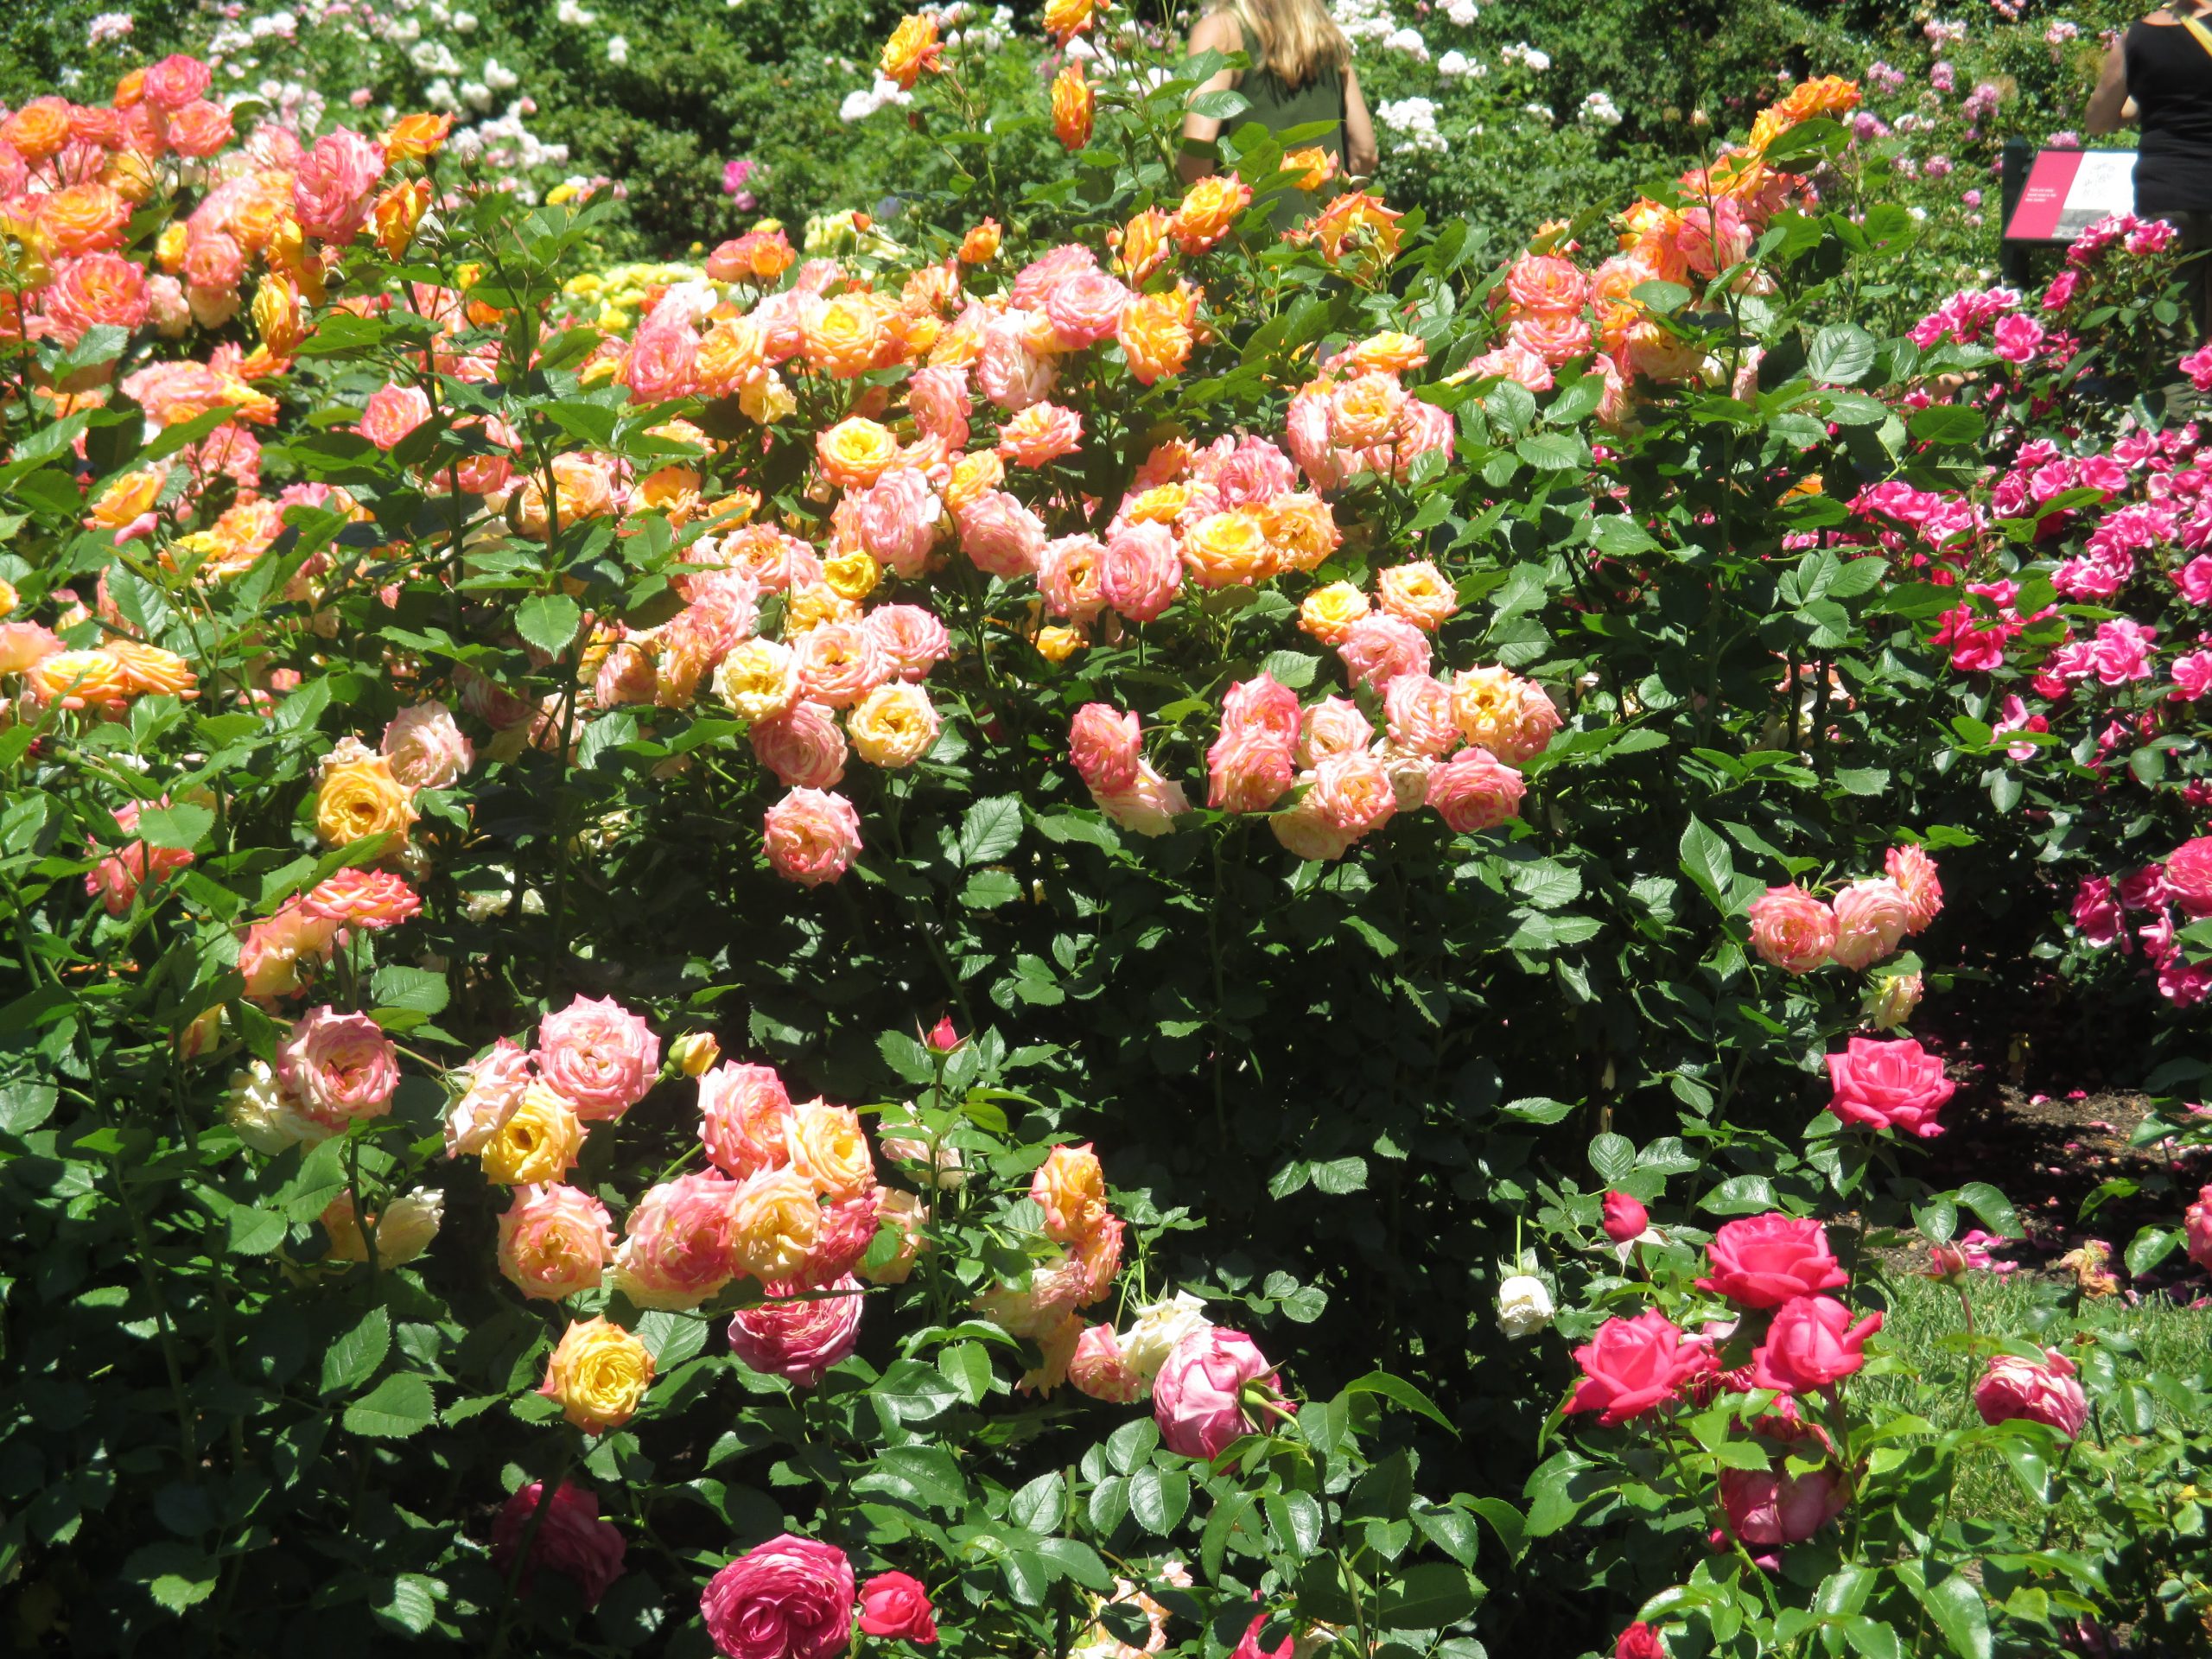 A rose shrub in flower